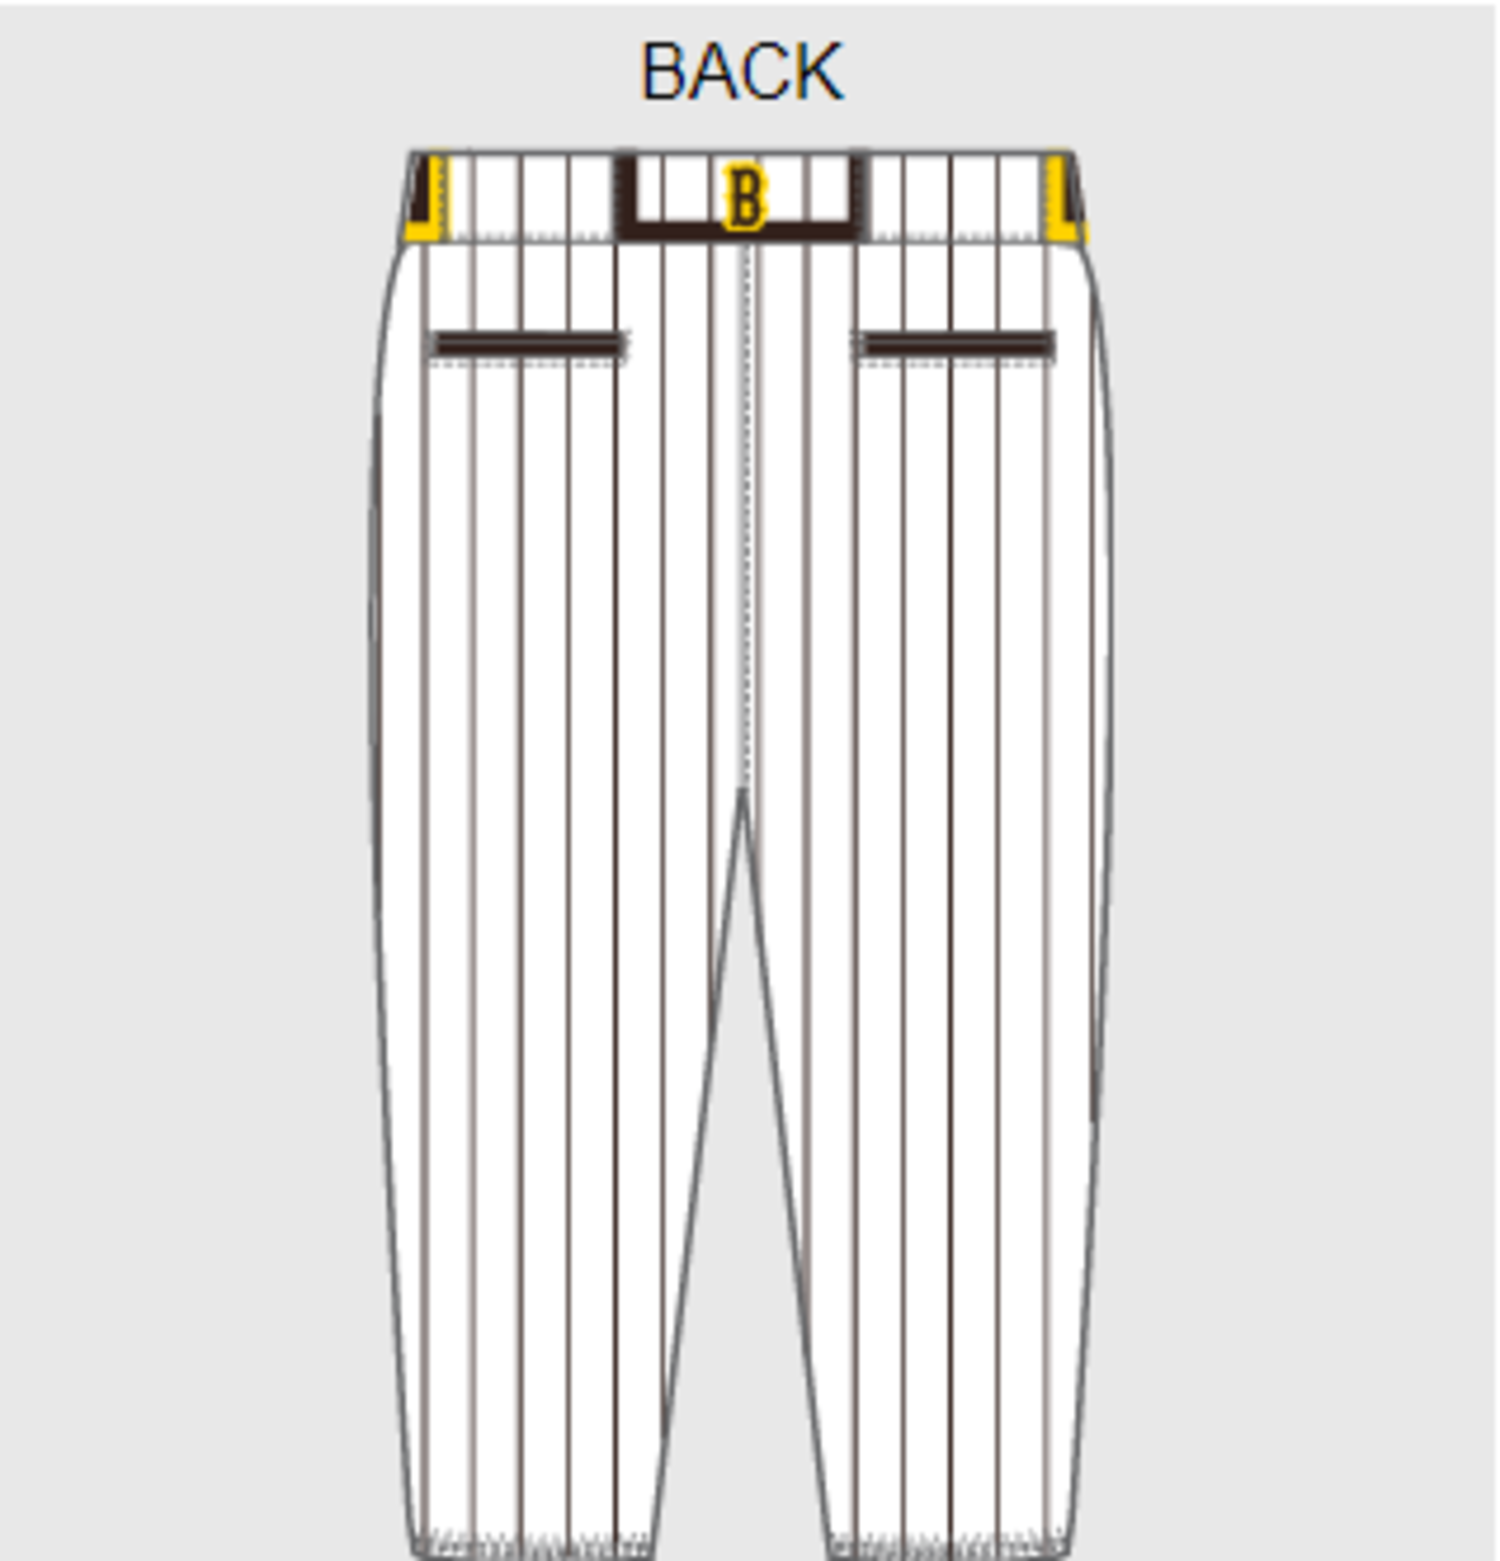 Tee-Baggers Custom Pinstripe Baseball Jerseys